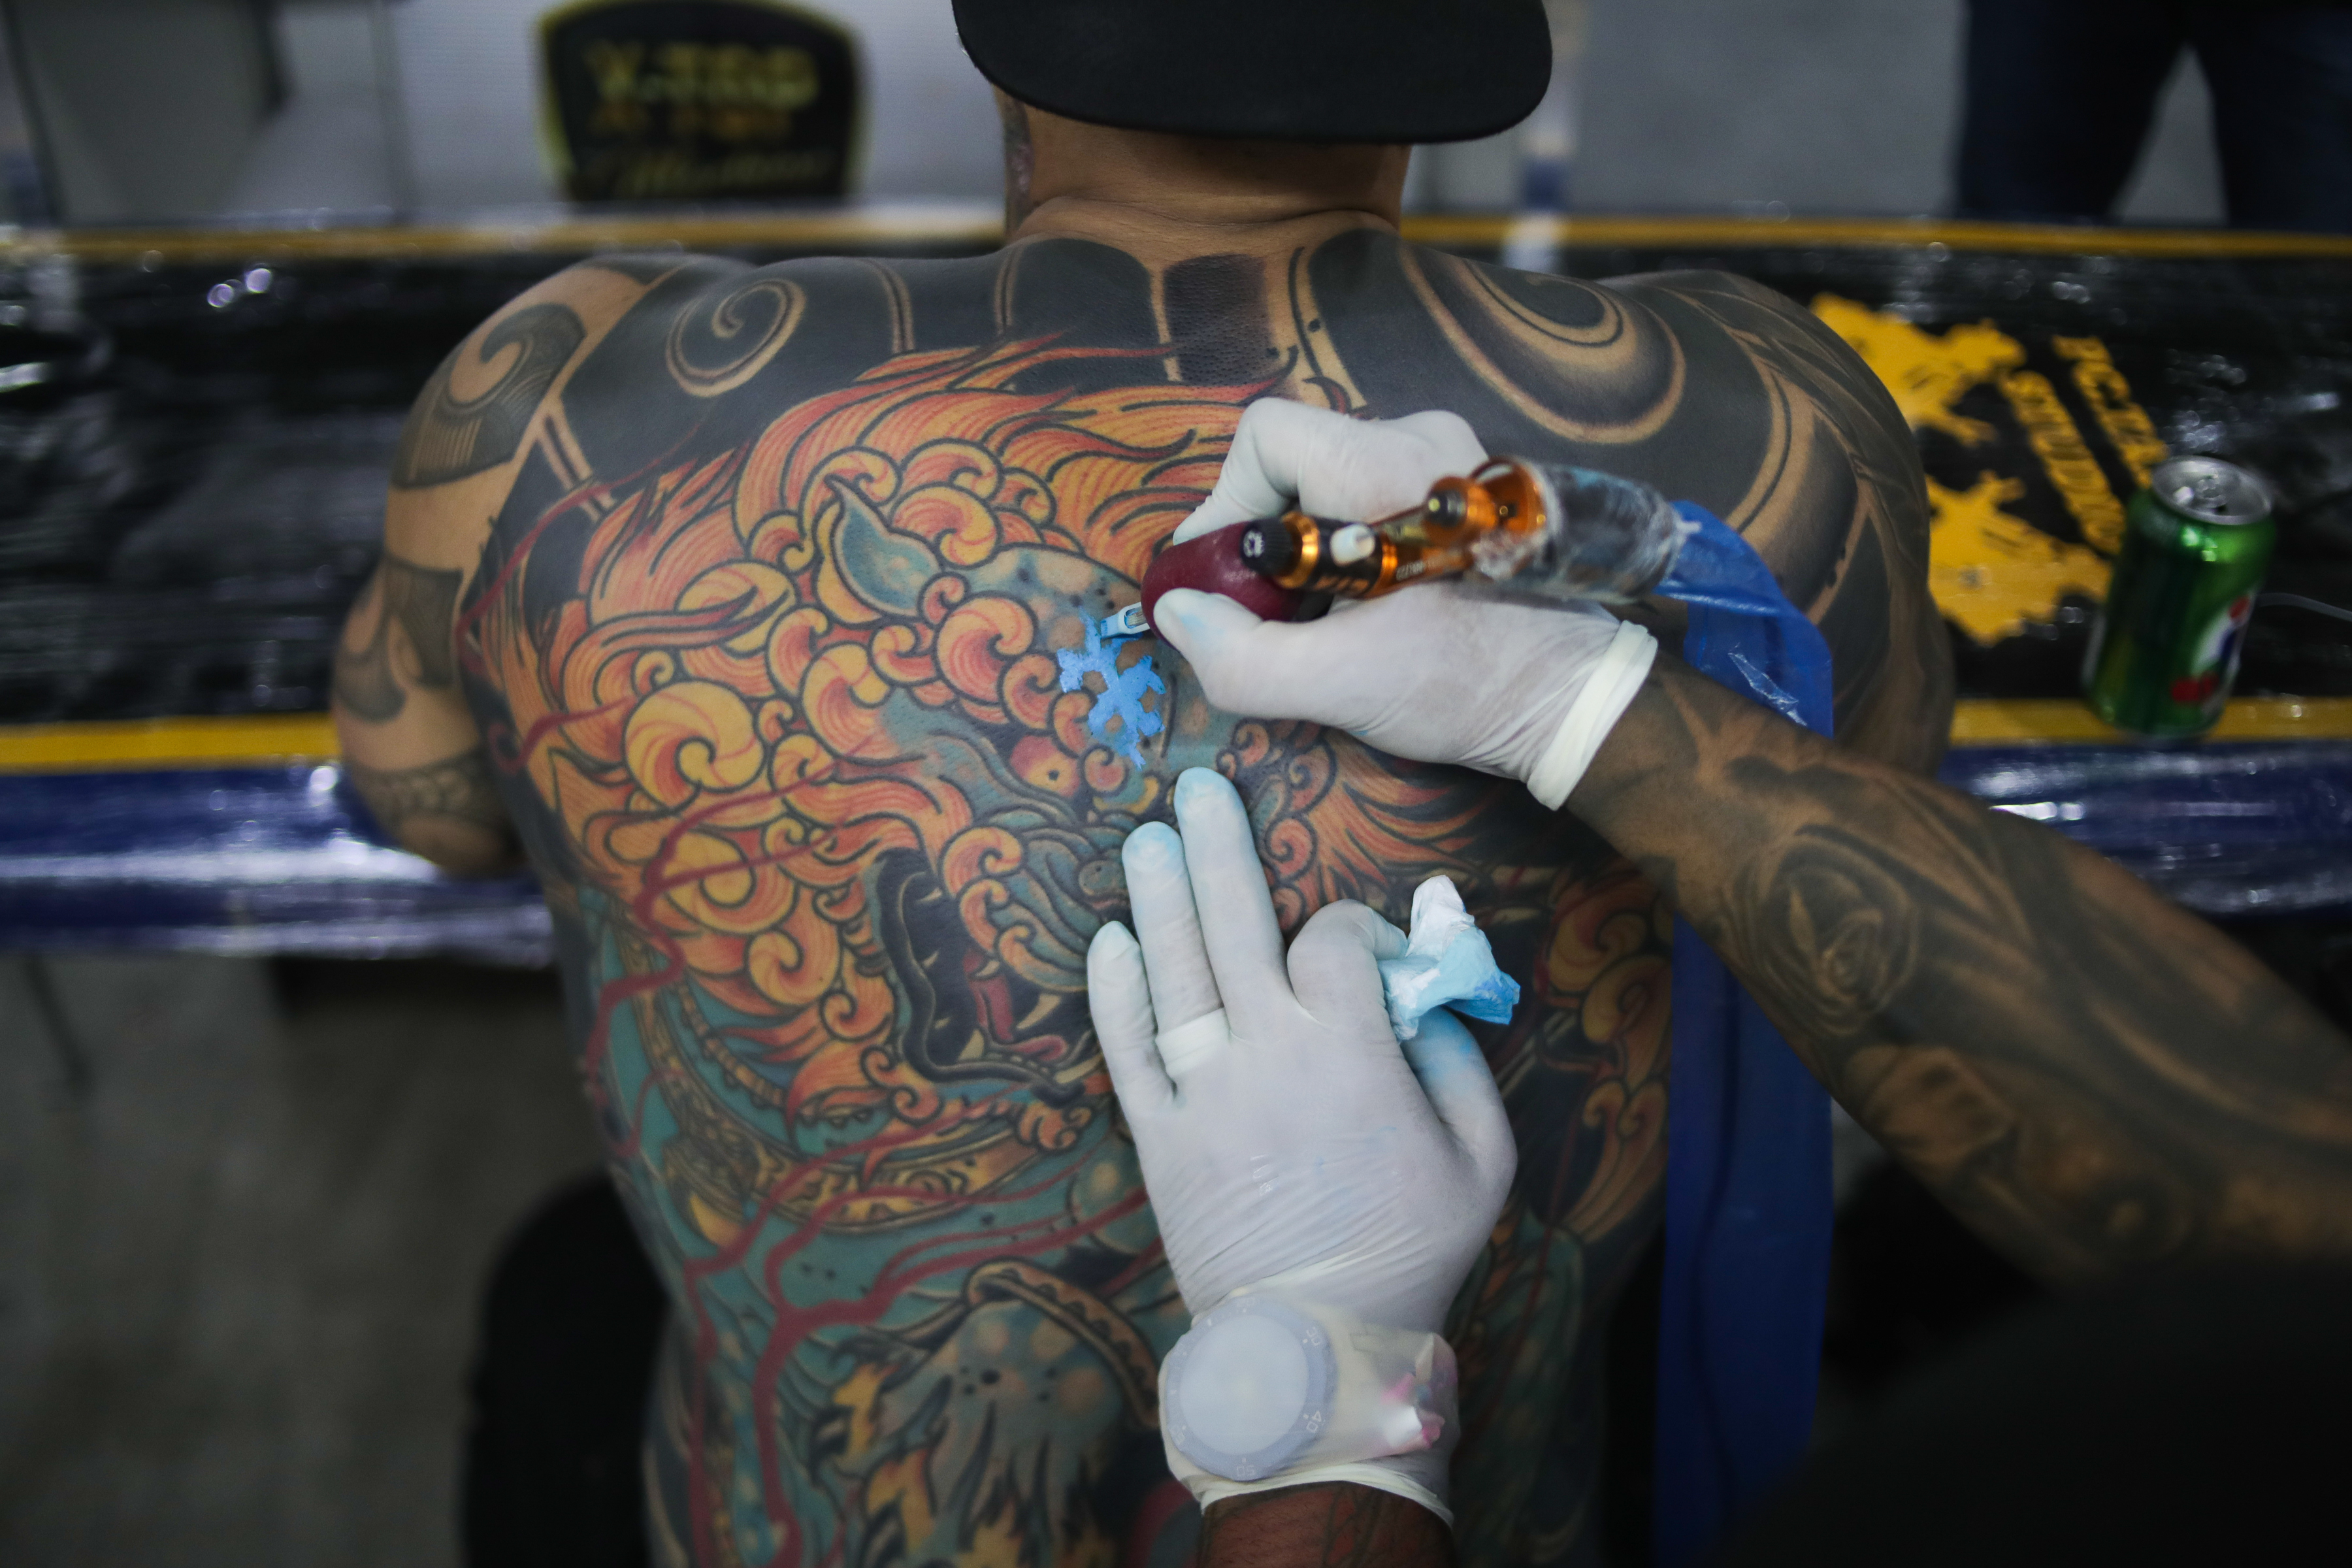 Los tatuajes sí se pueden borrar aunque influyen varios factores